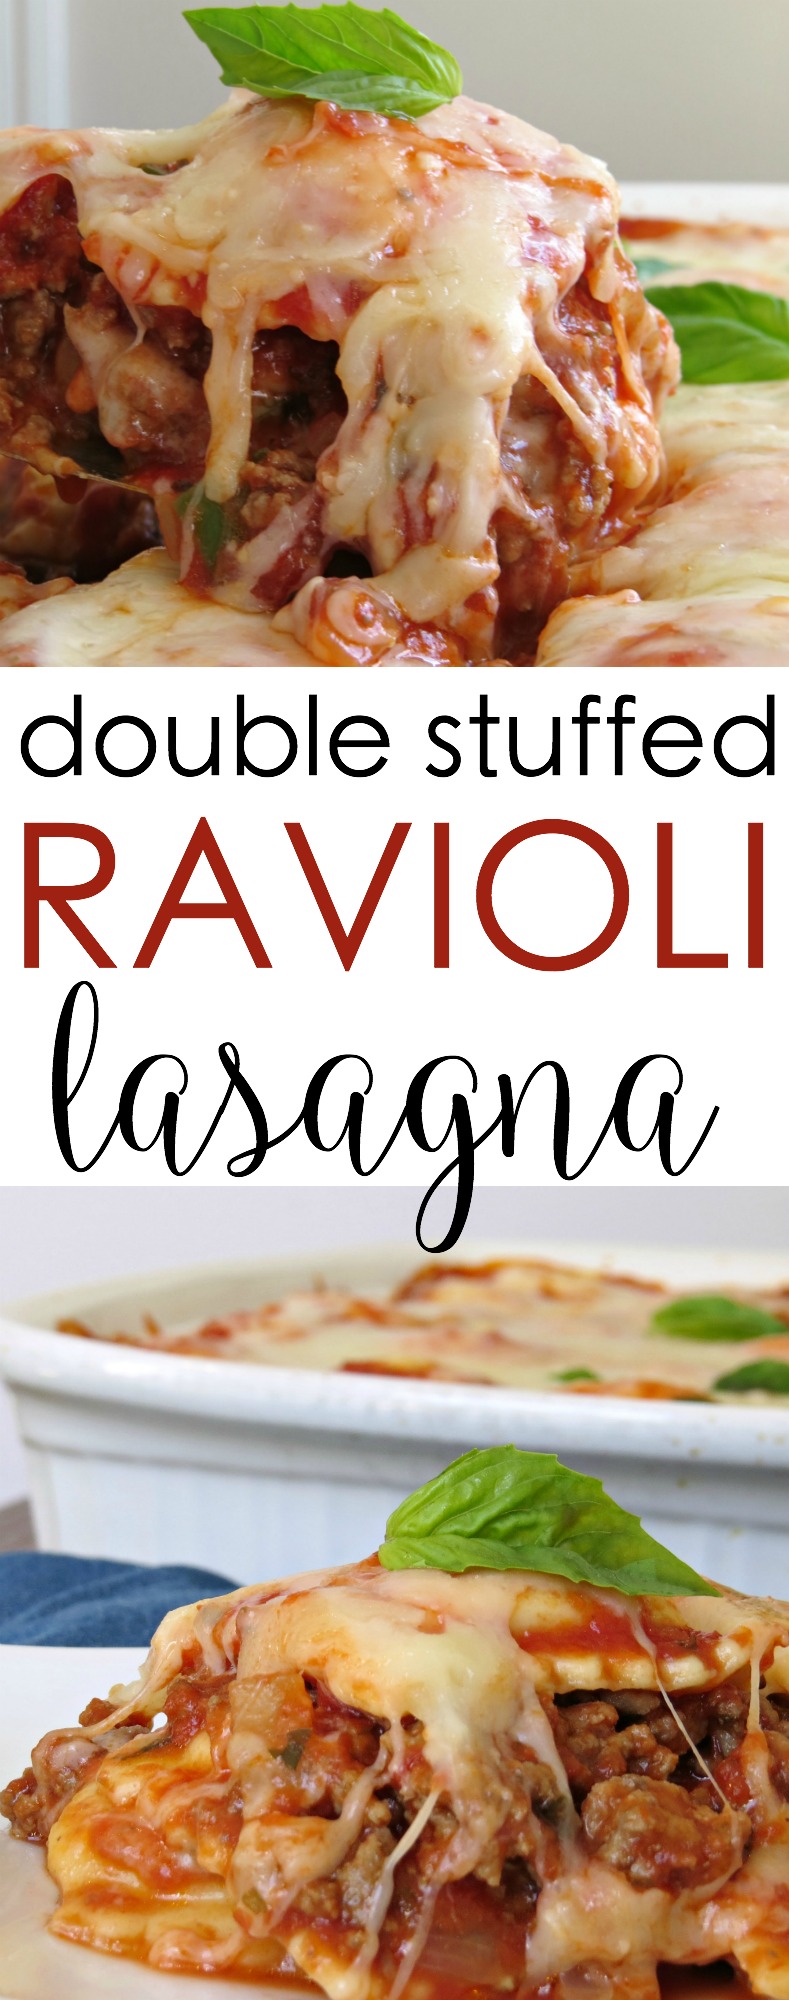 ravioli lasagna